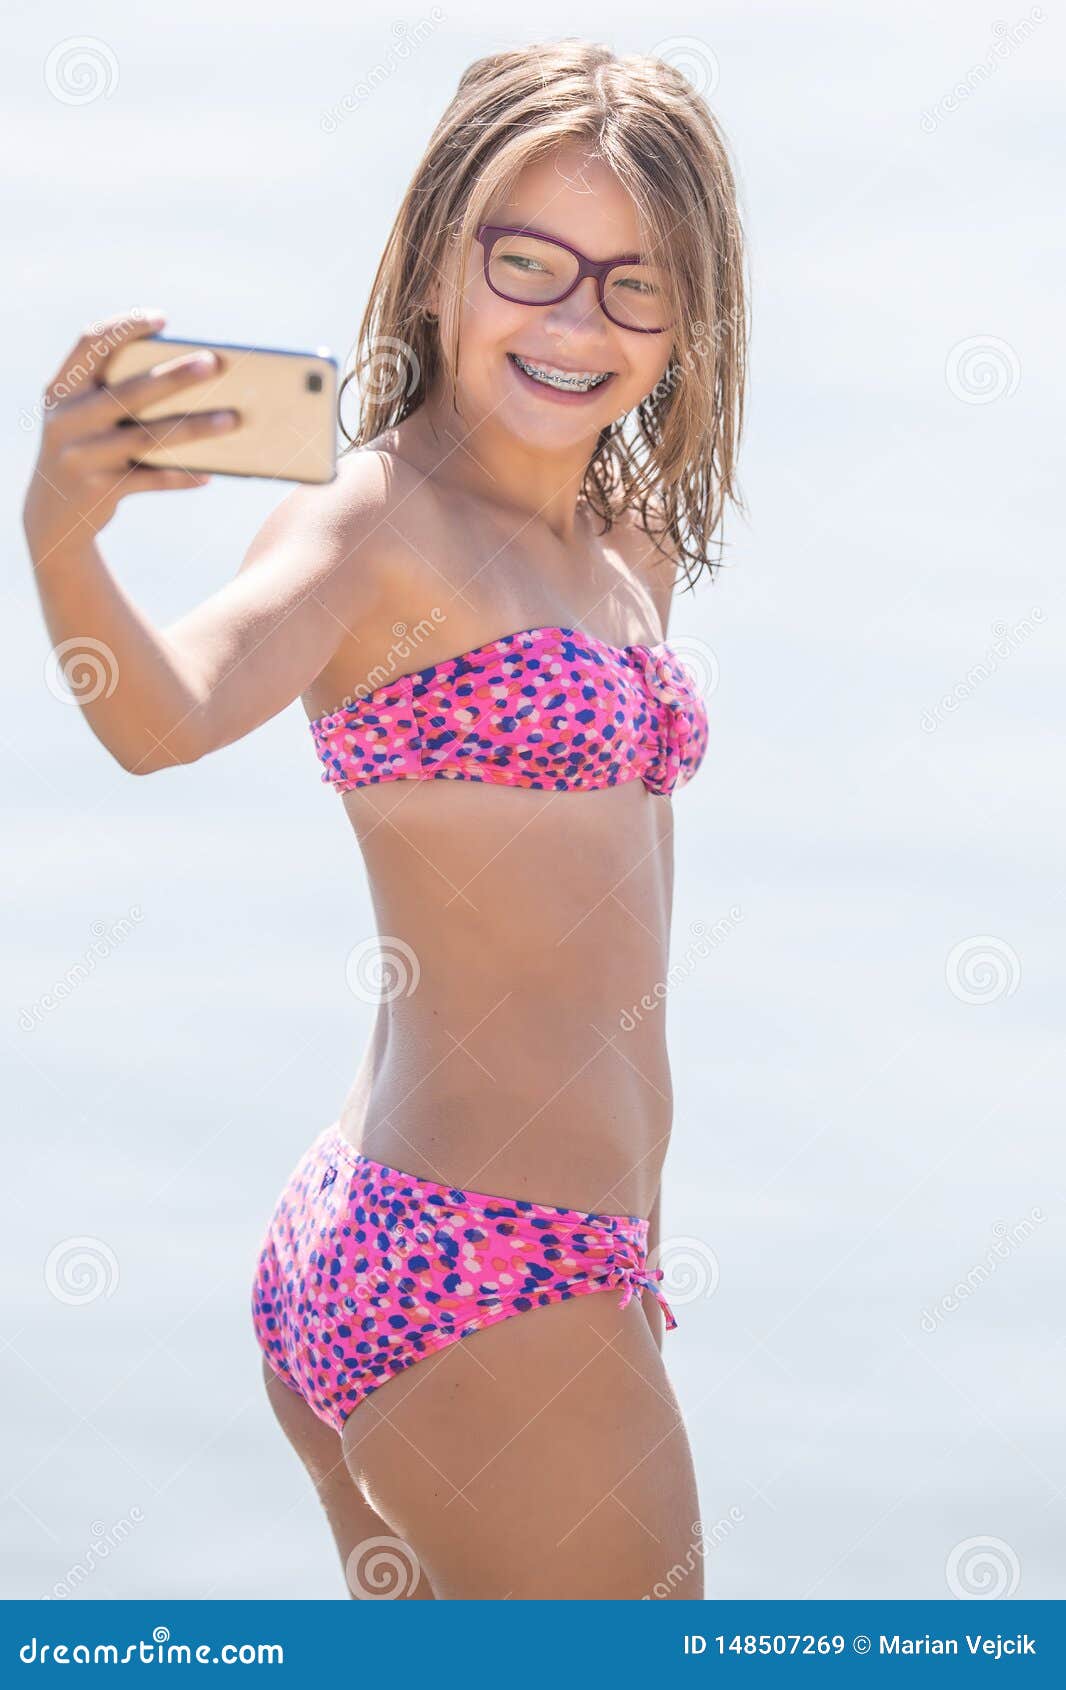 young teen selfie